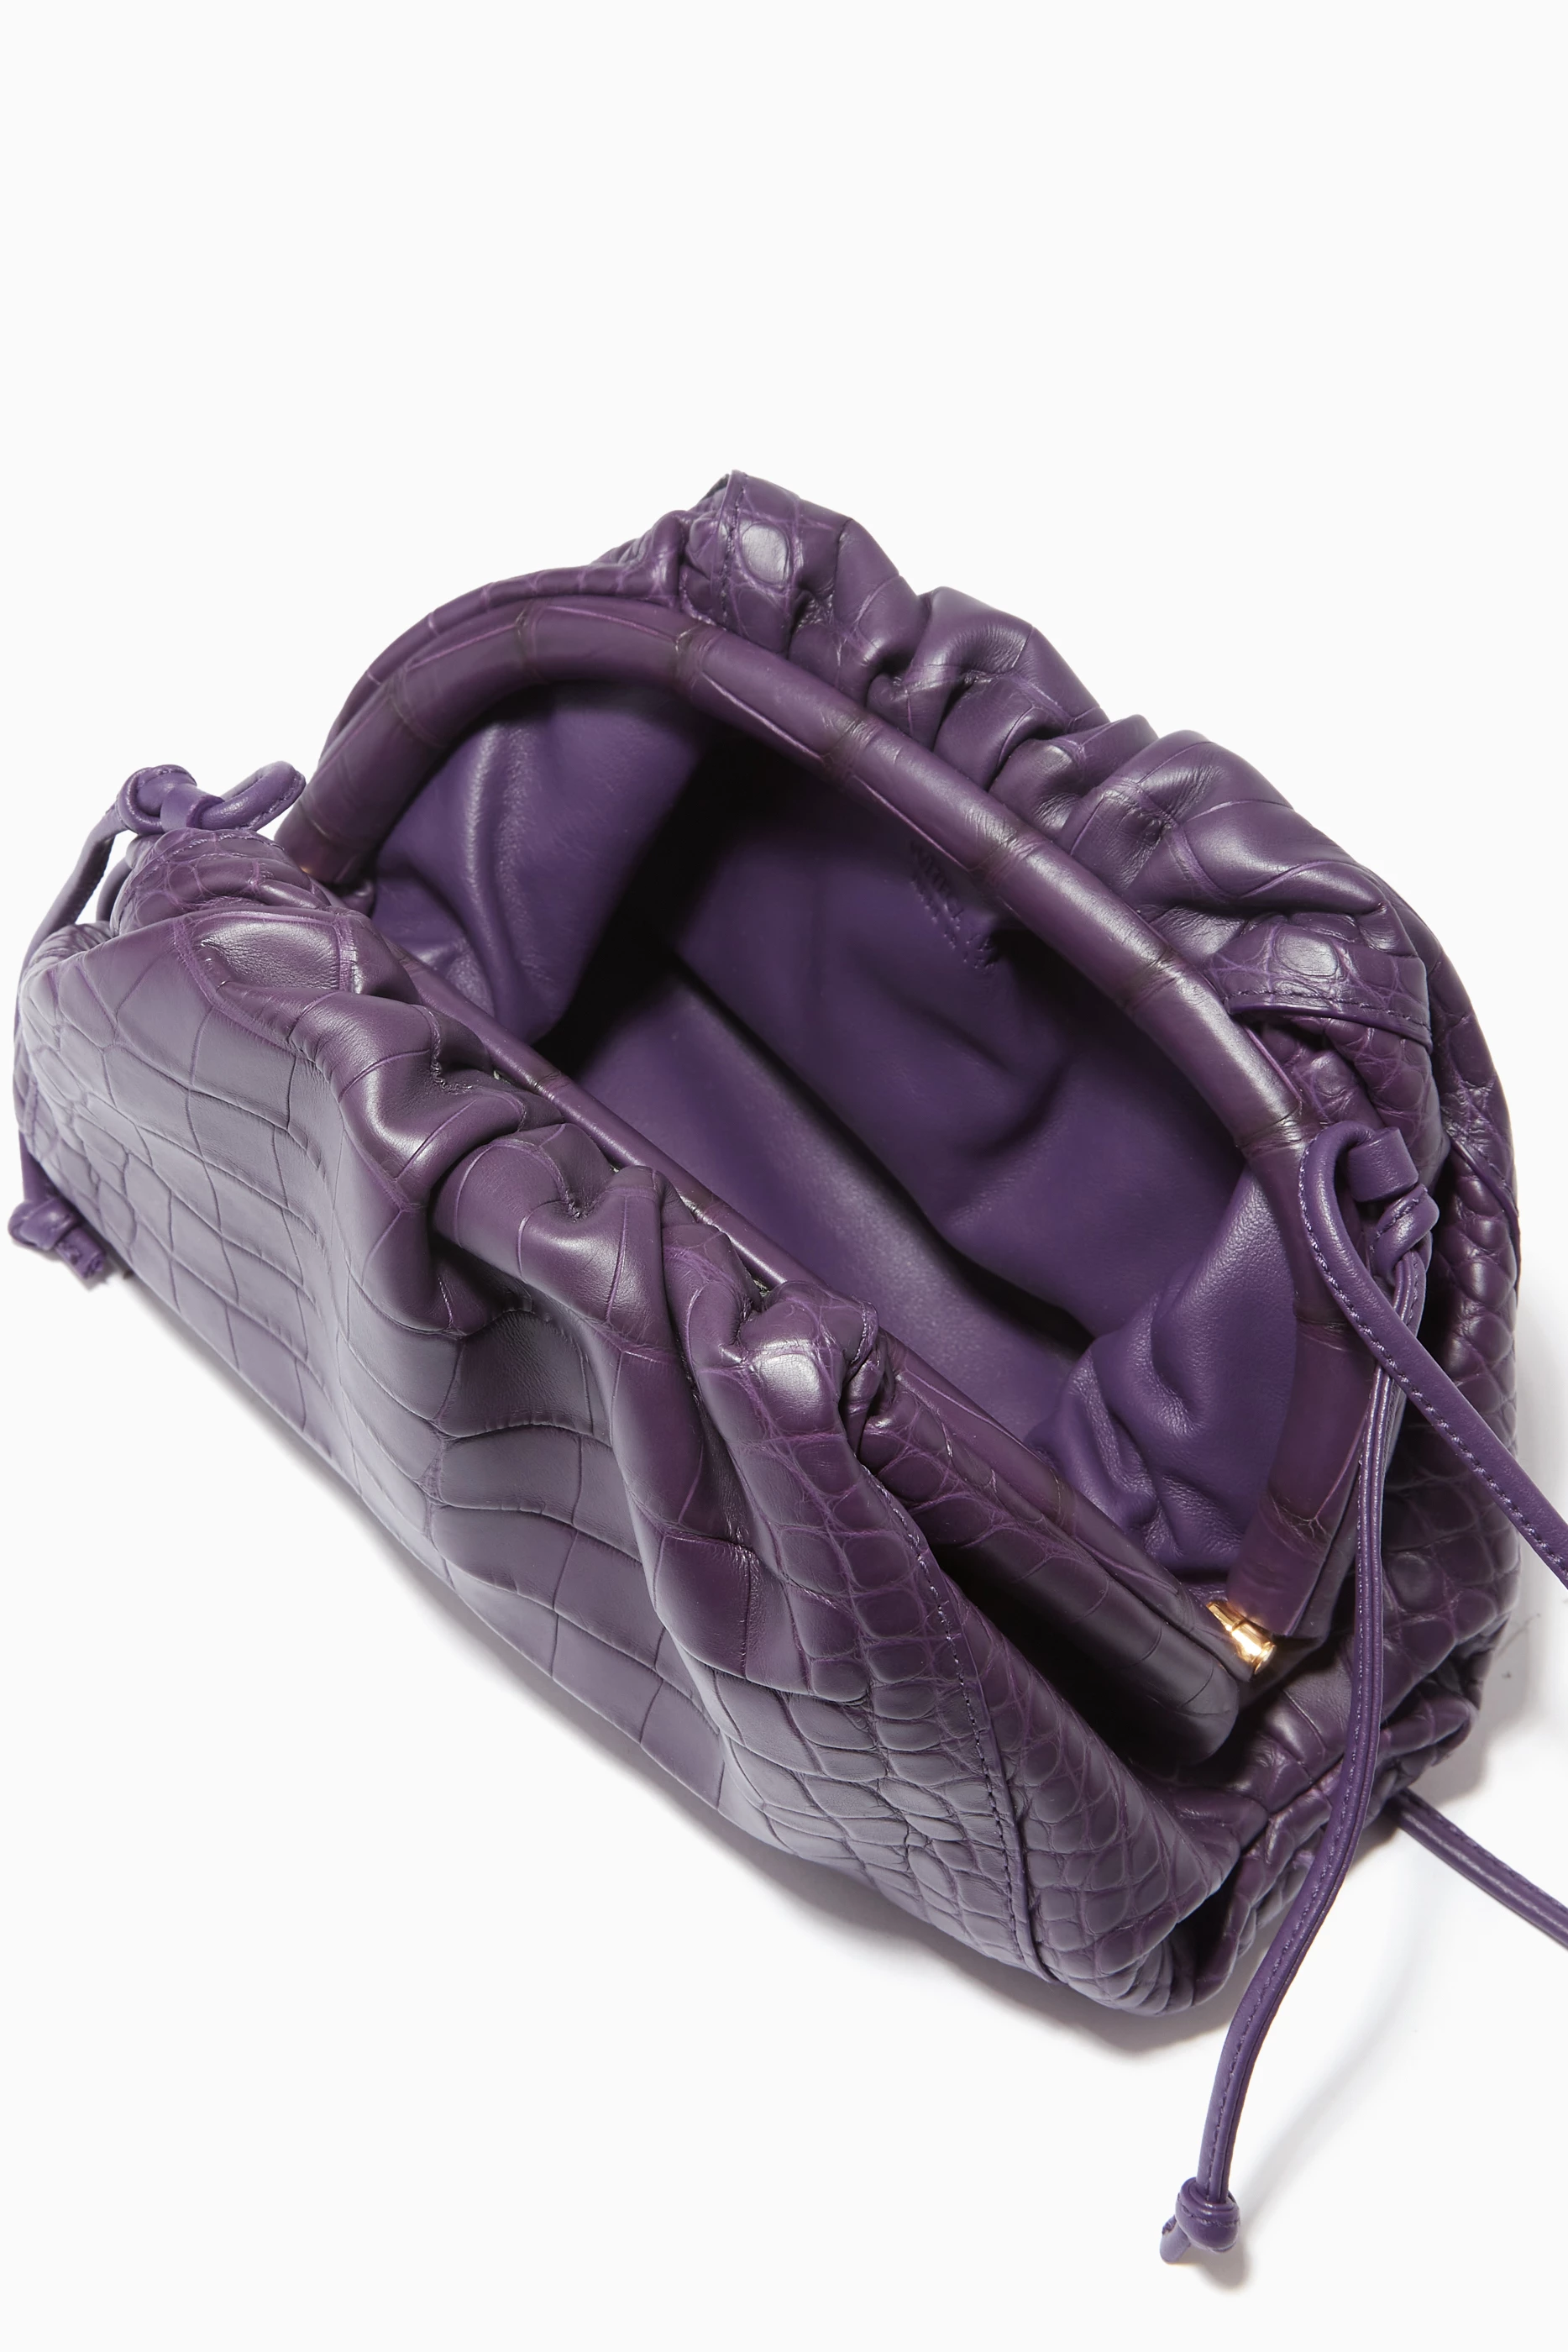 Bottega Veneta The Mini Pouch - Purple Mini Bags, Handbags - BOT218854